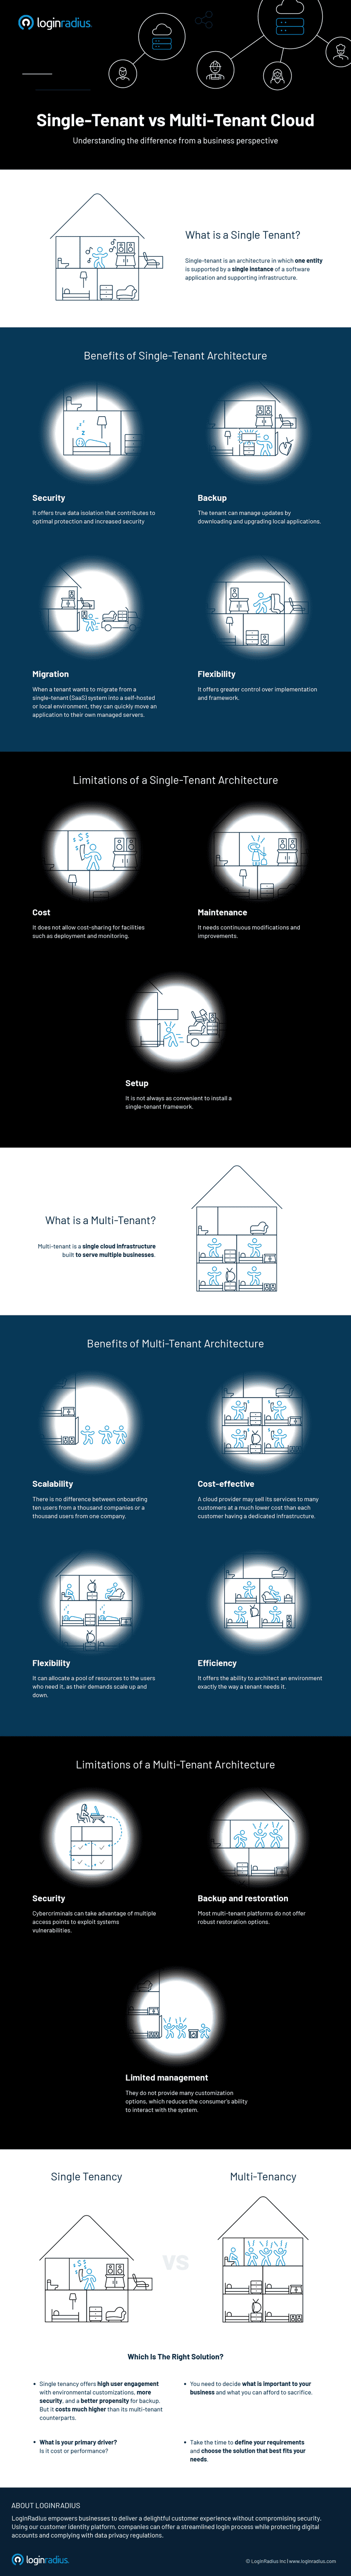 single-tenant-vs-multi-tenant-infographic